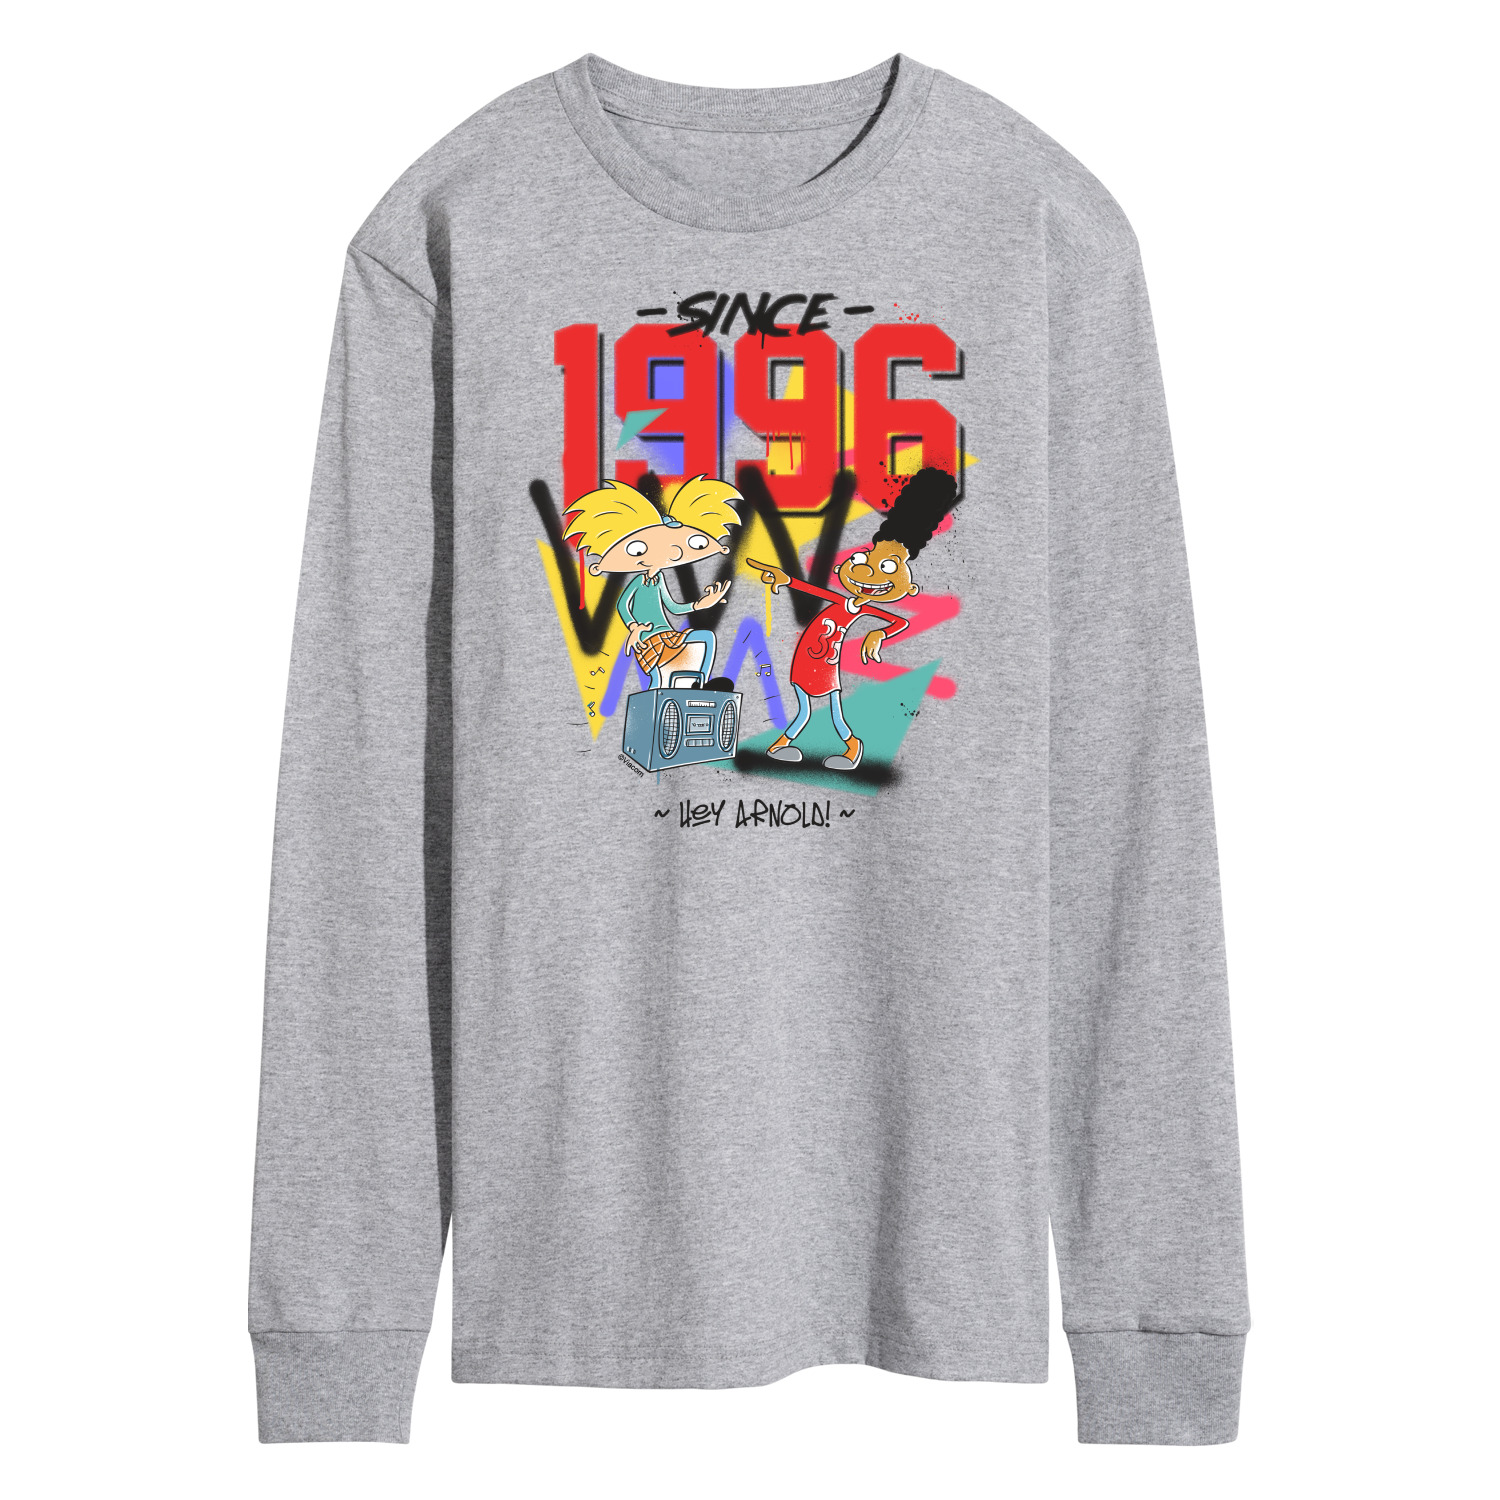 Hey Arnold! - Since 96 - Men's Long Sleeve T-Shirt - Walmart.com